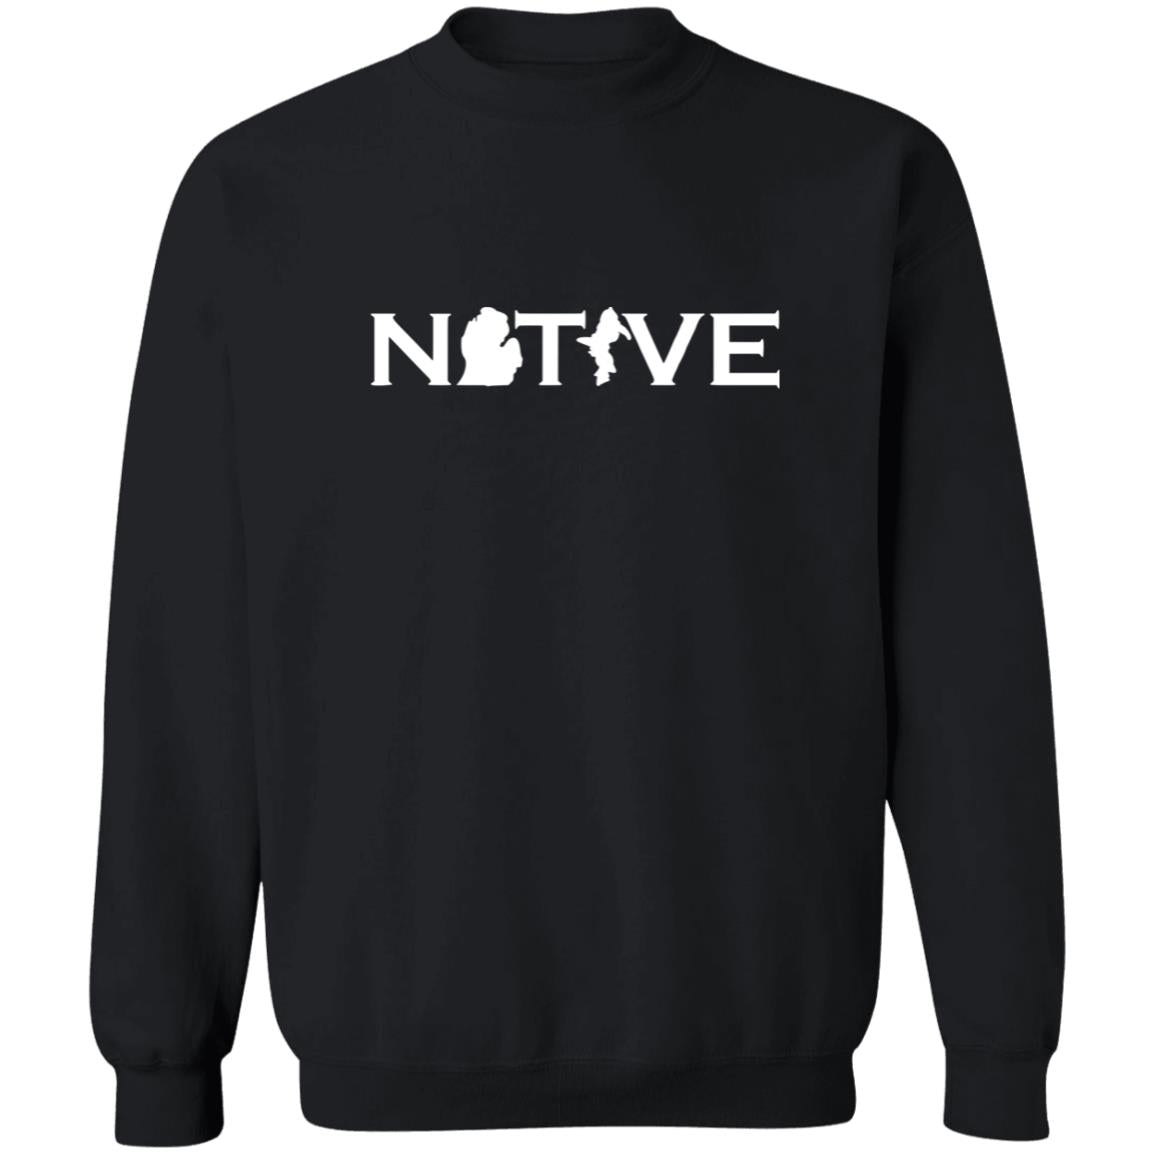 MI Native - White G180 Crewneck Pullover Sweatshirt